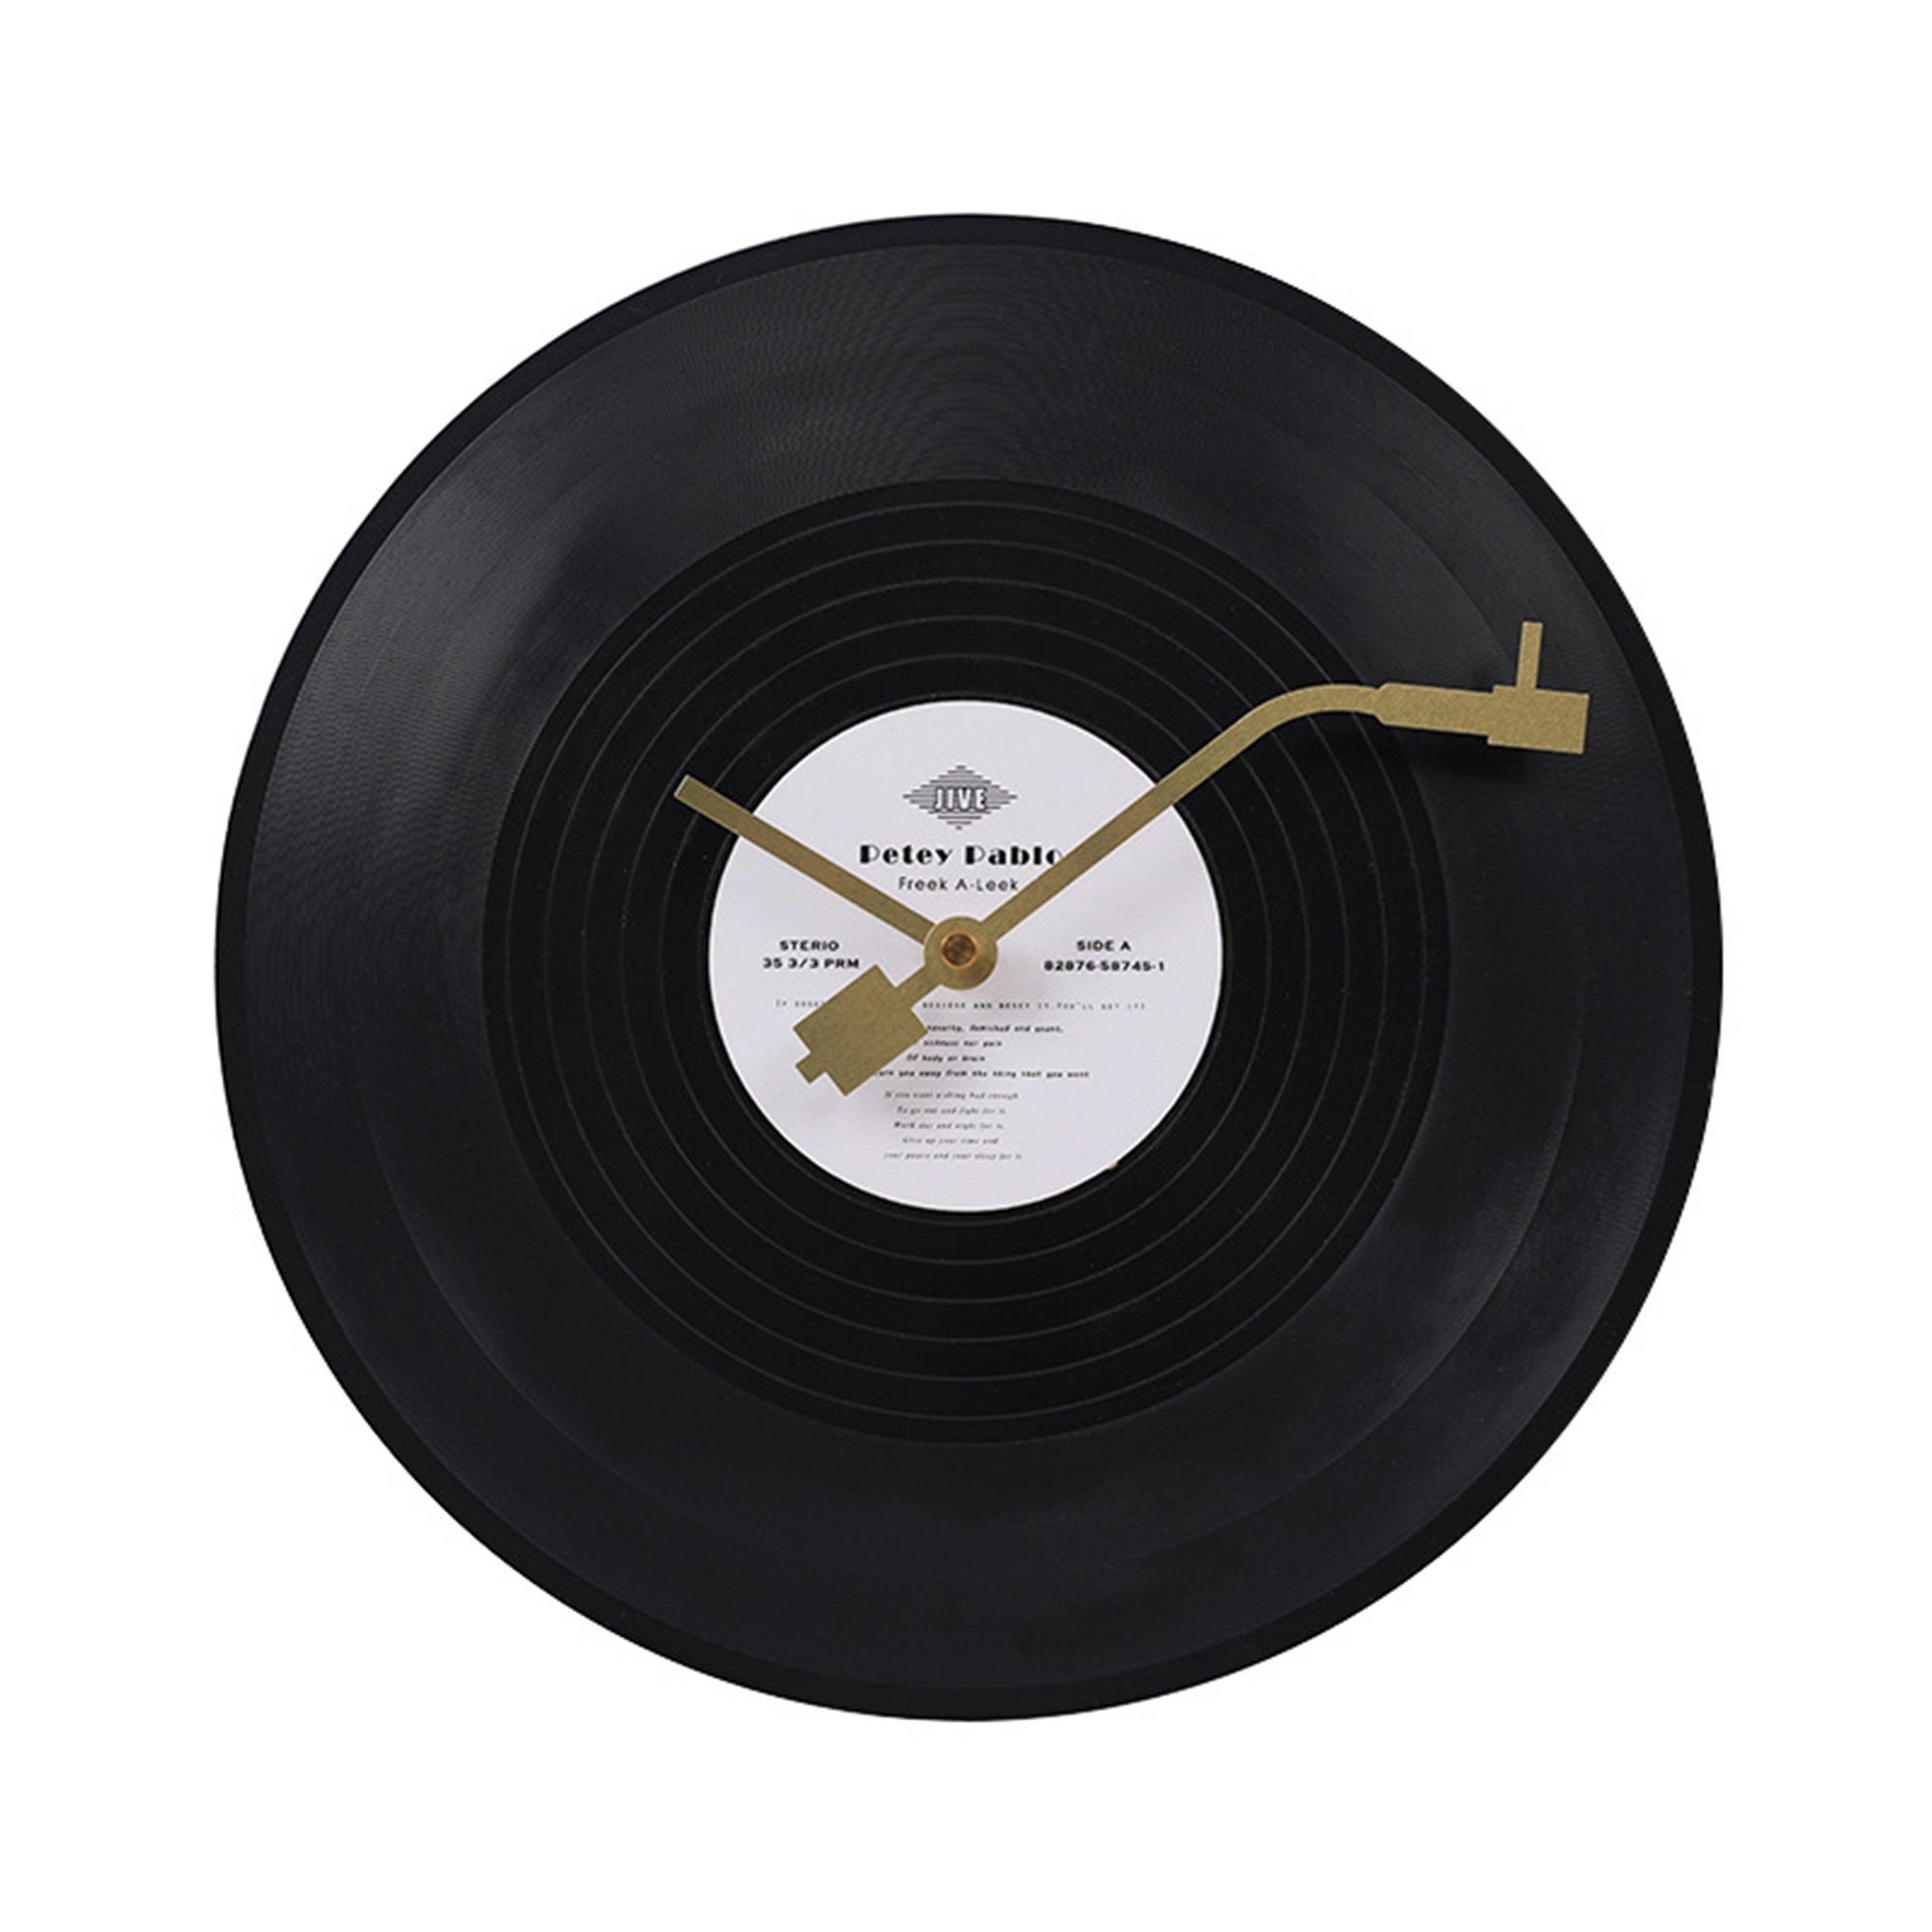 Dedom Wanduhr Wanduhr, Dekorative Uhren, Art Wanduhr, alter Plattenstil, 30x30 cm (Plattenspieler, gedämpft, rund, schwarz)